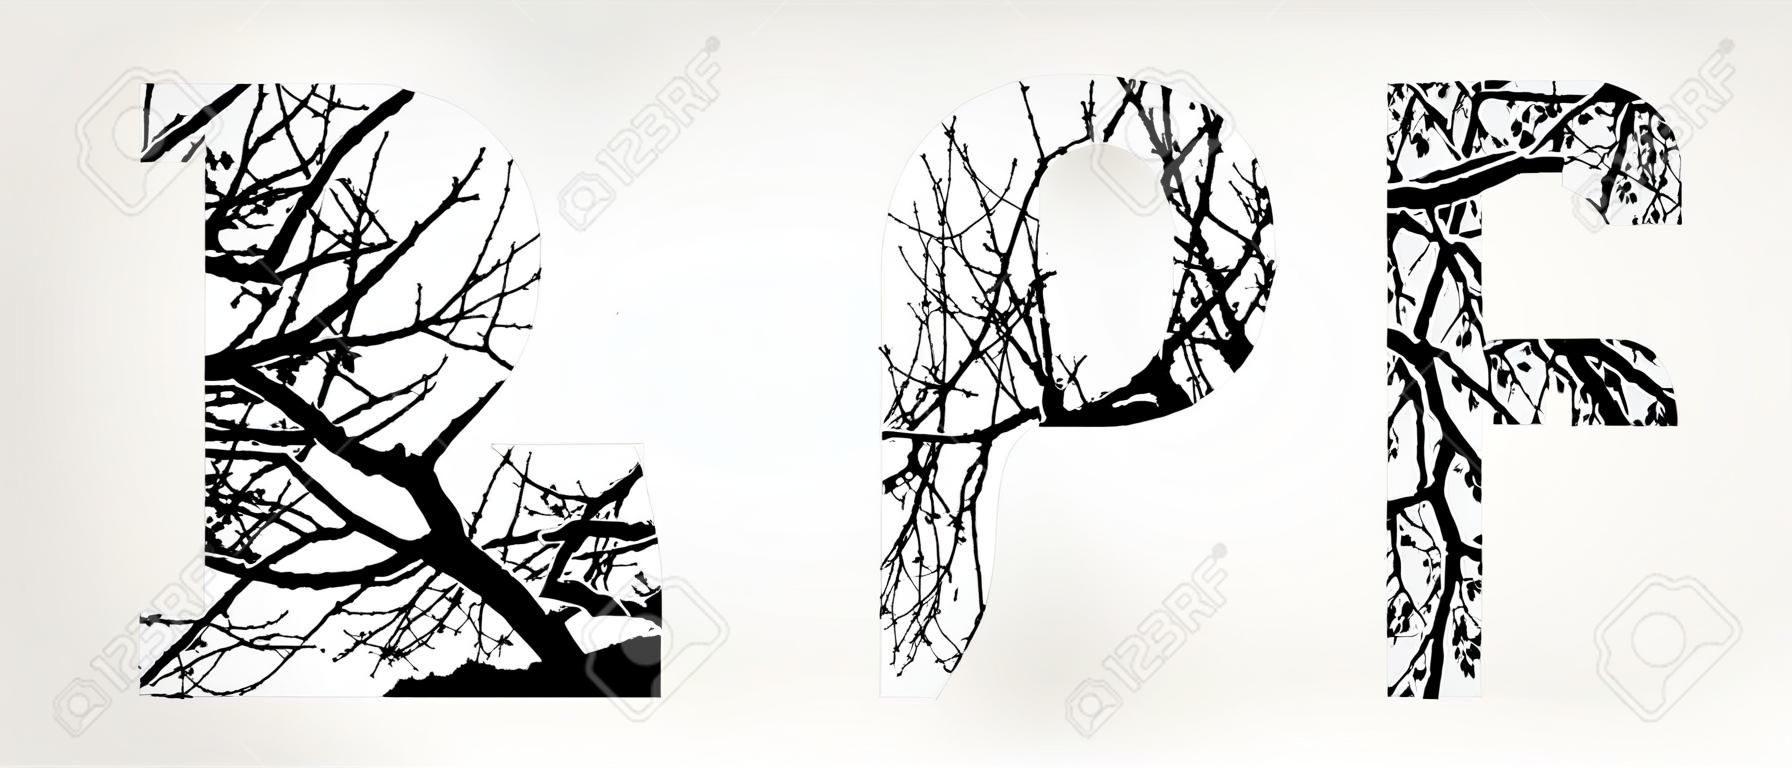 2016 dupla exposição com árvore branca no fundo preto.Vetor isolado ilustração.Números de silhueta de dupla exposição preto e branco combinados com fotografia da natureza.Cartas do alfabeto